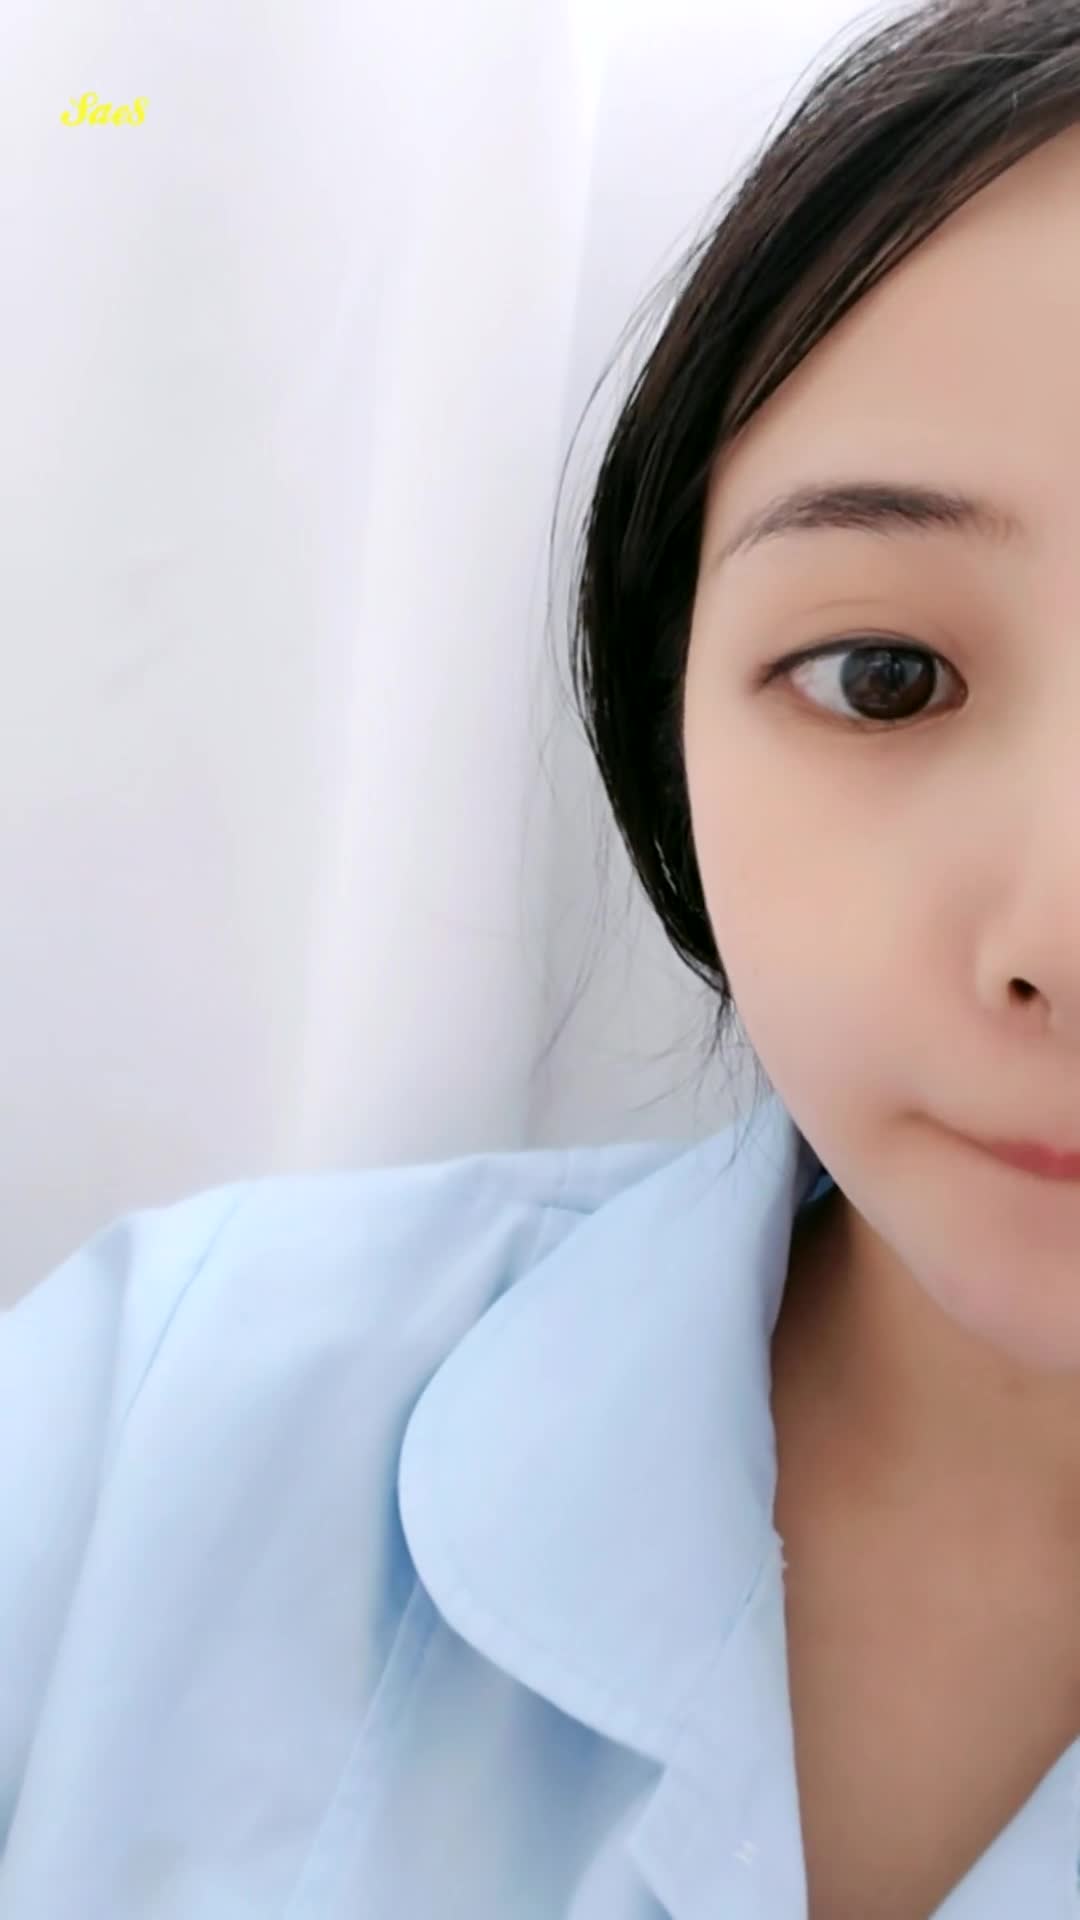 杭州城南社康中心极品巨乳小护士上班时间露奶7